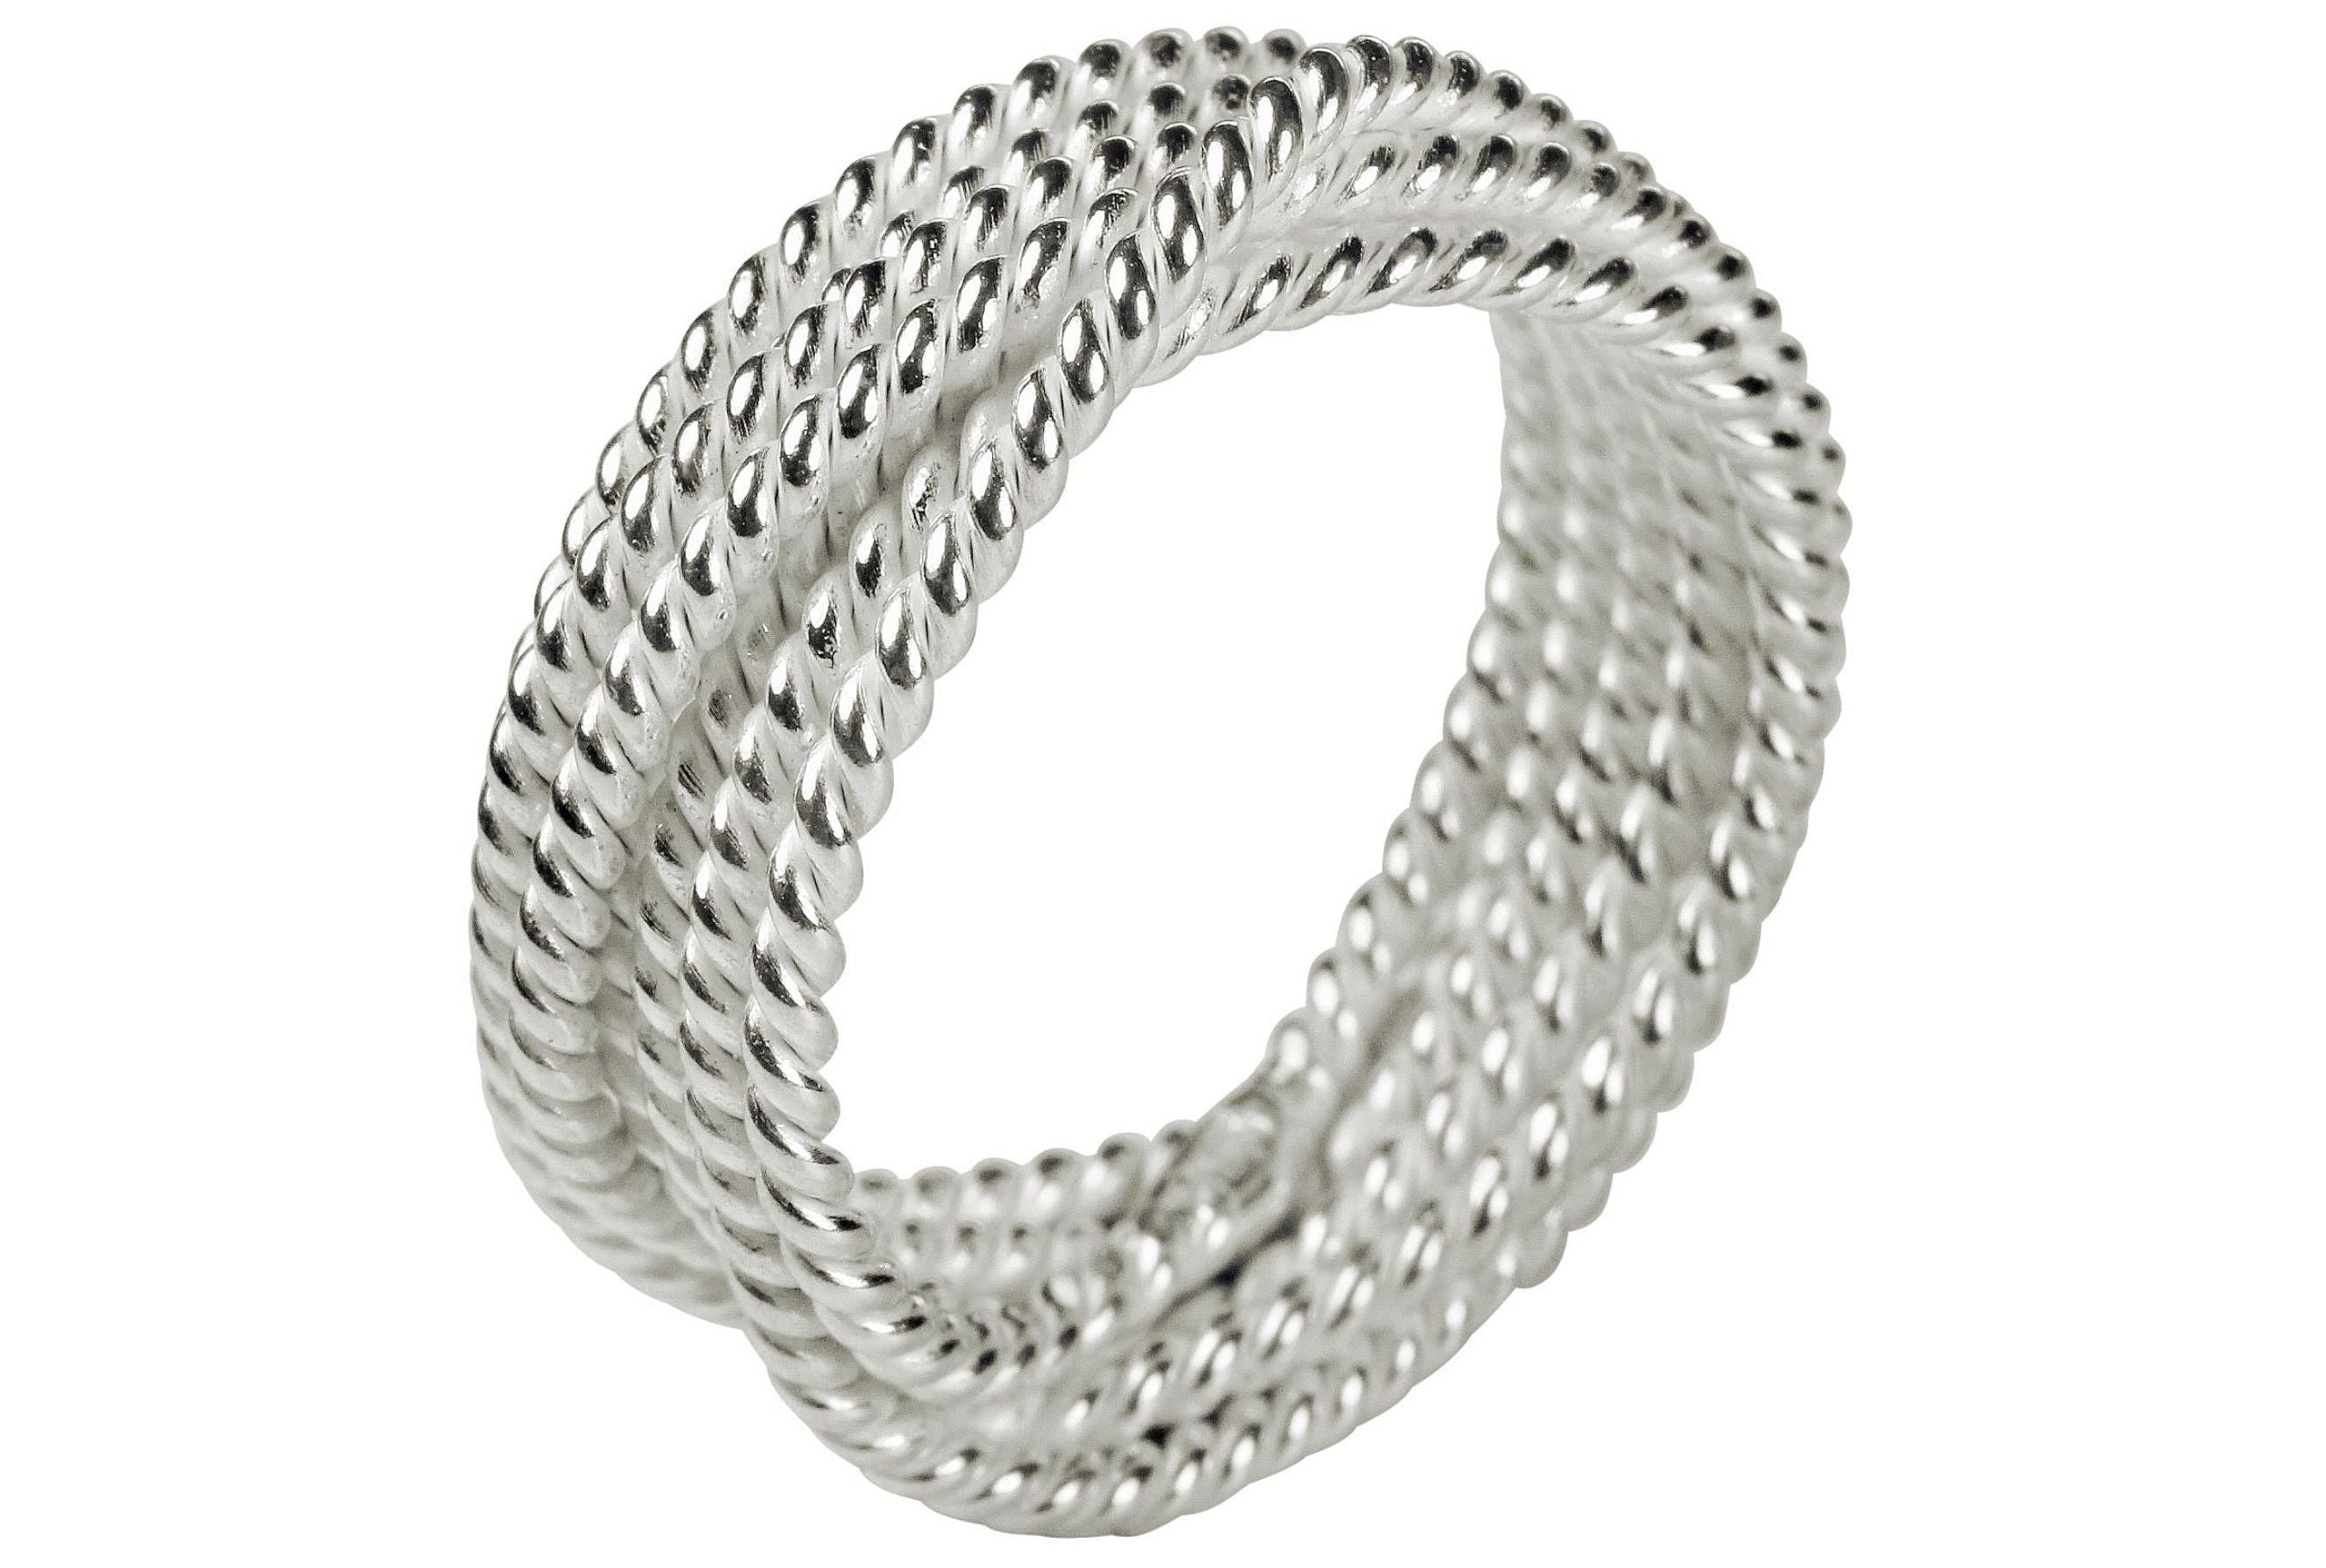 Attraktiver Wickelring für Damen aus Silber. Der Ring ist gekordelt und hat eine teils matte, teil glänzende Oberfläche.